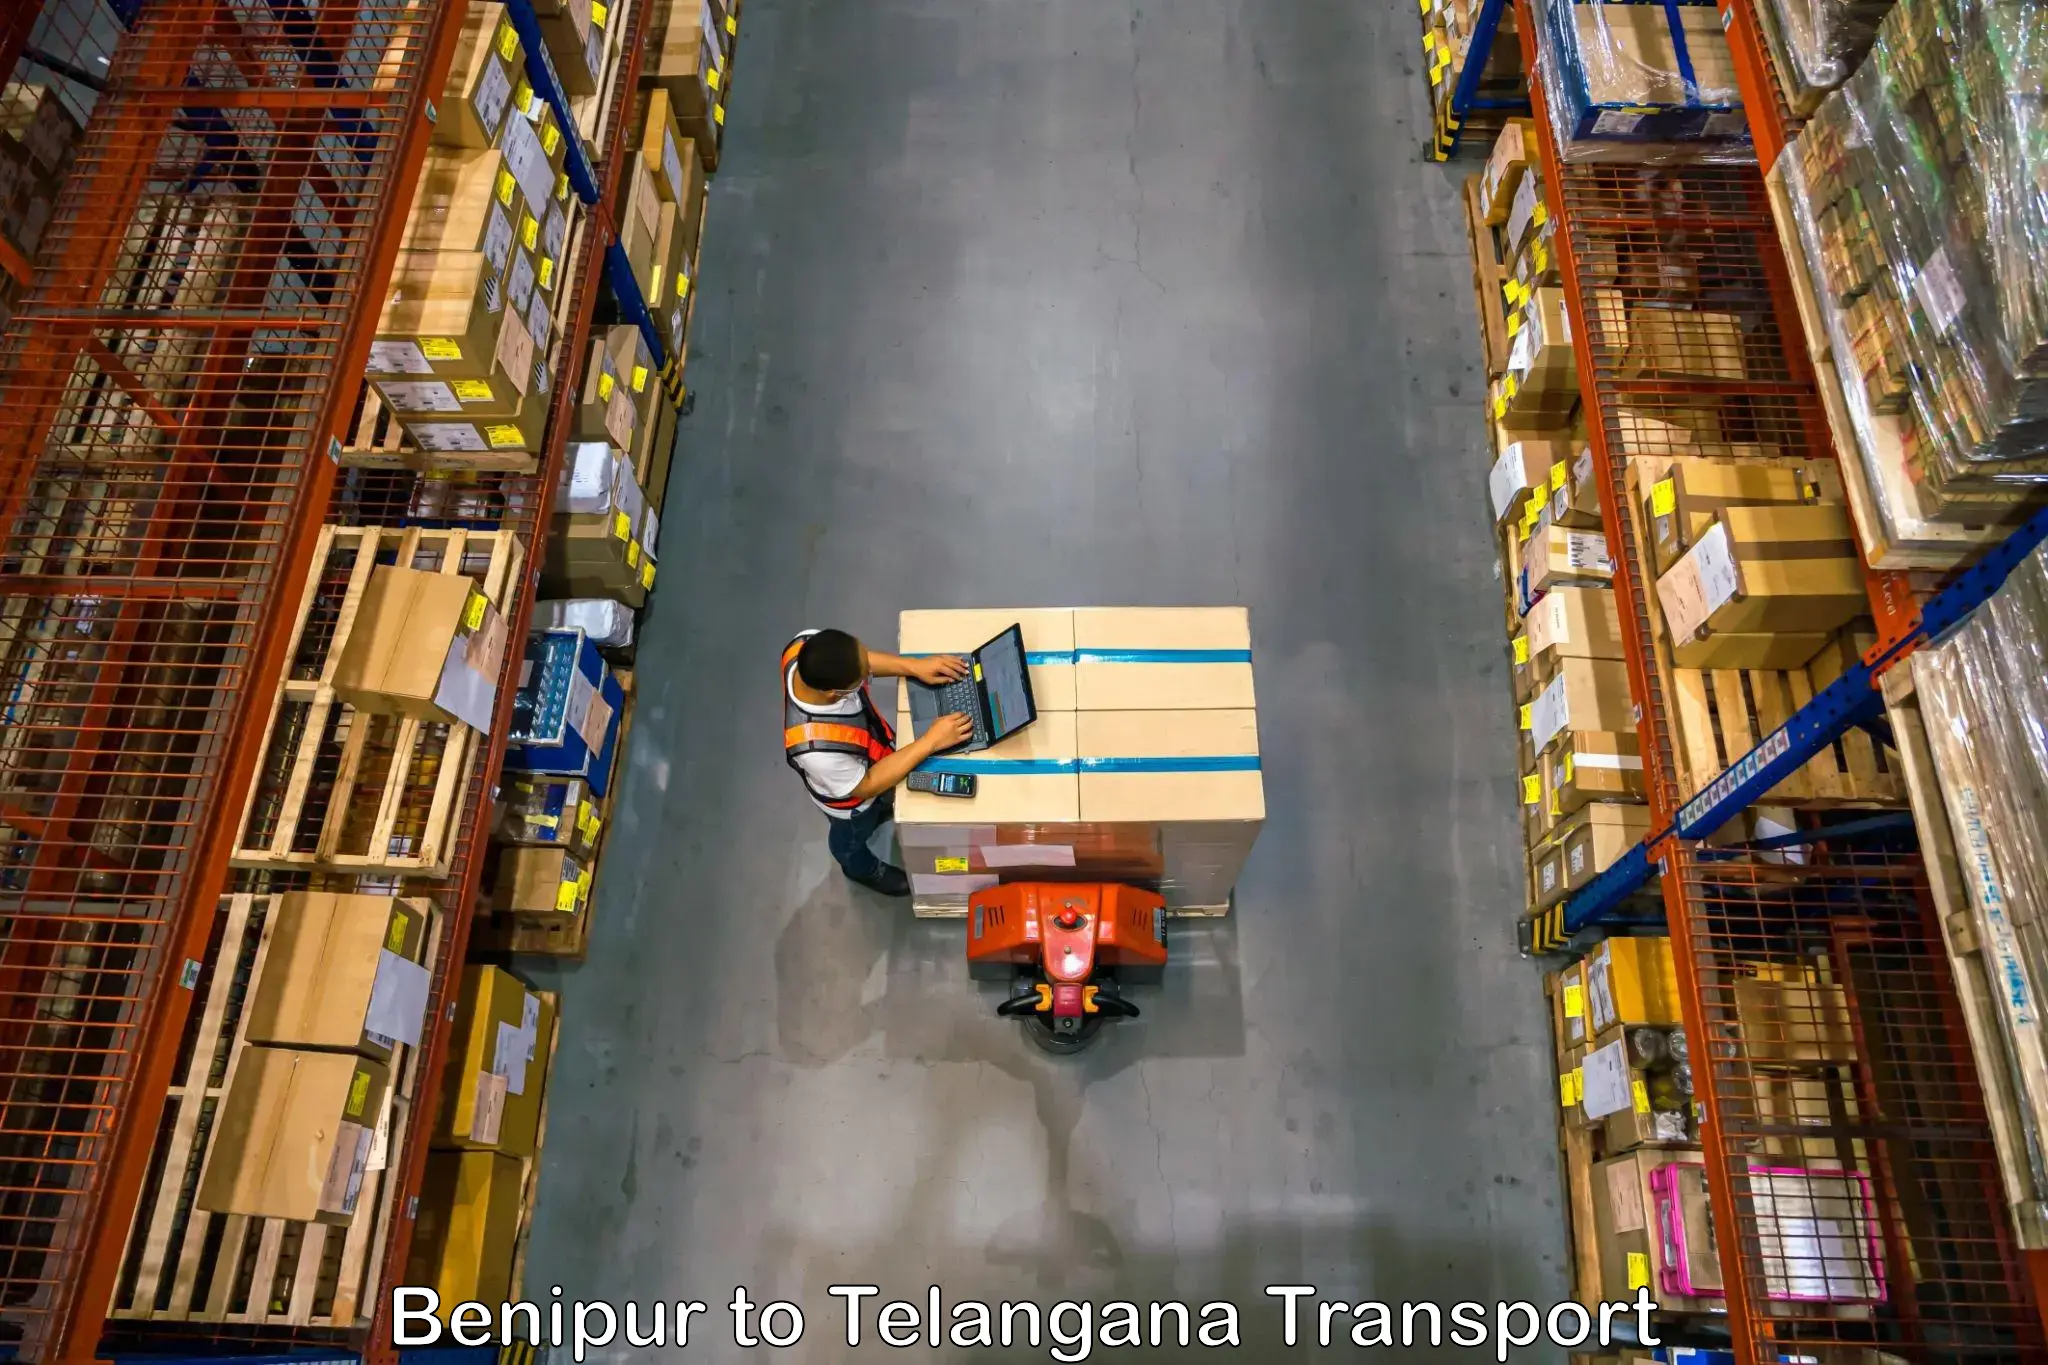 Daily transport service Benipur to Bellal Tarafa Bodhan